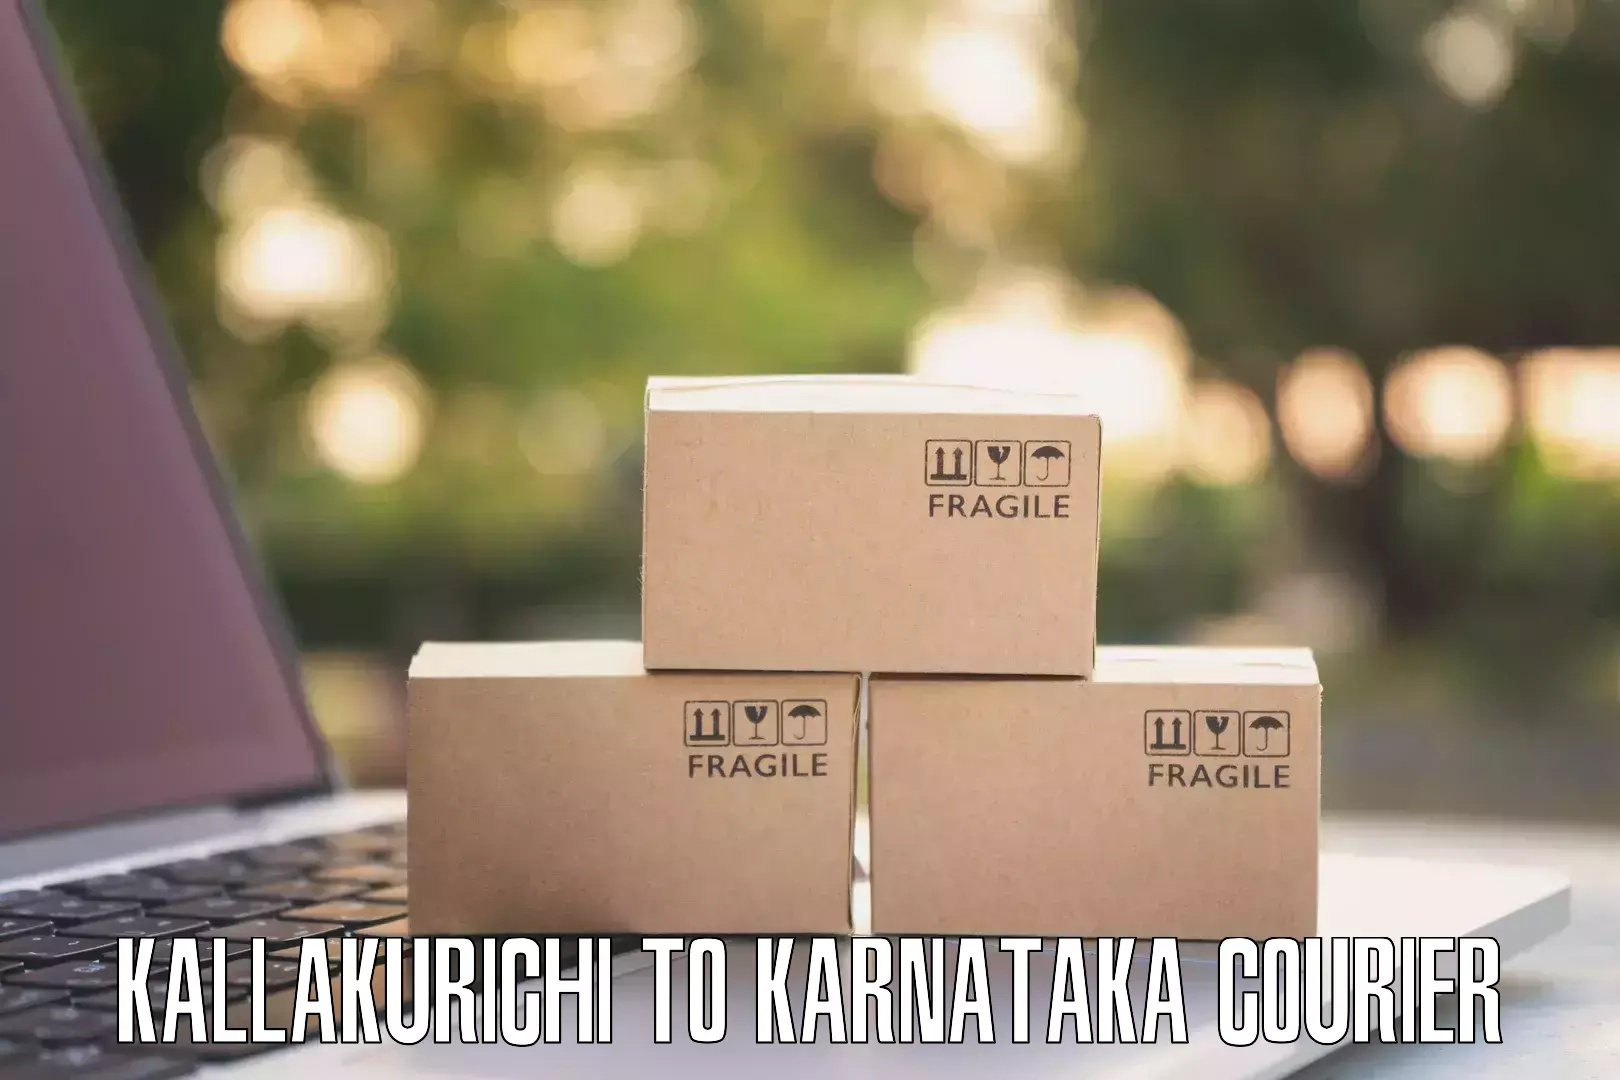 Door-to-door shipment Kallakurichi to Kollegal